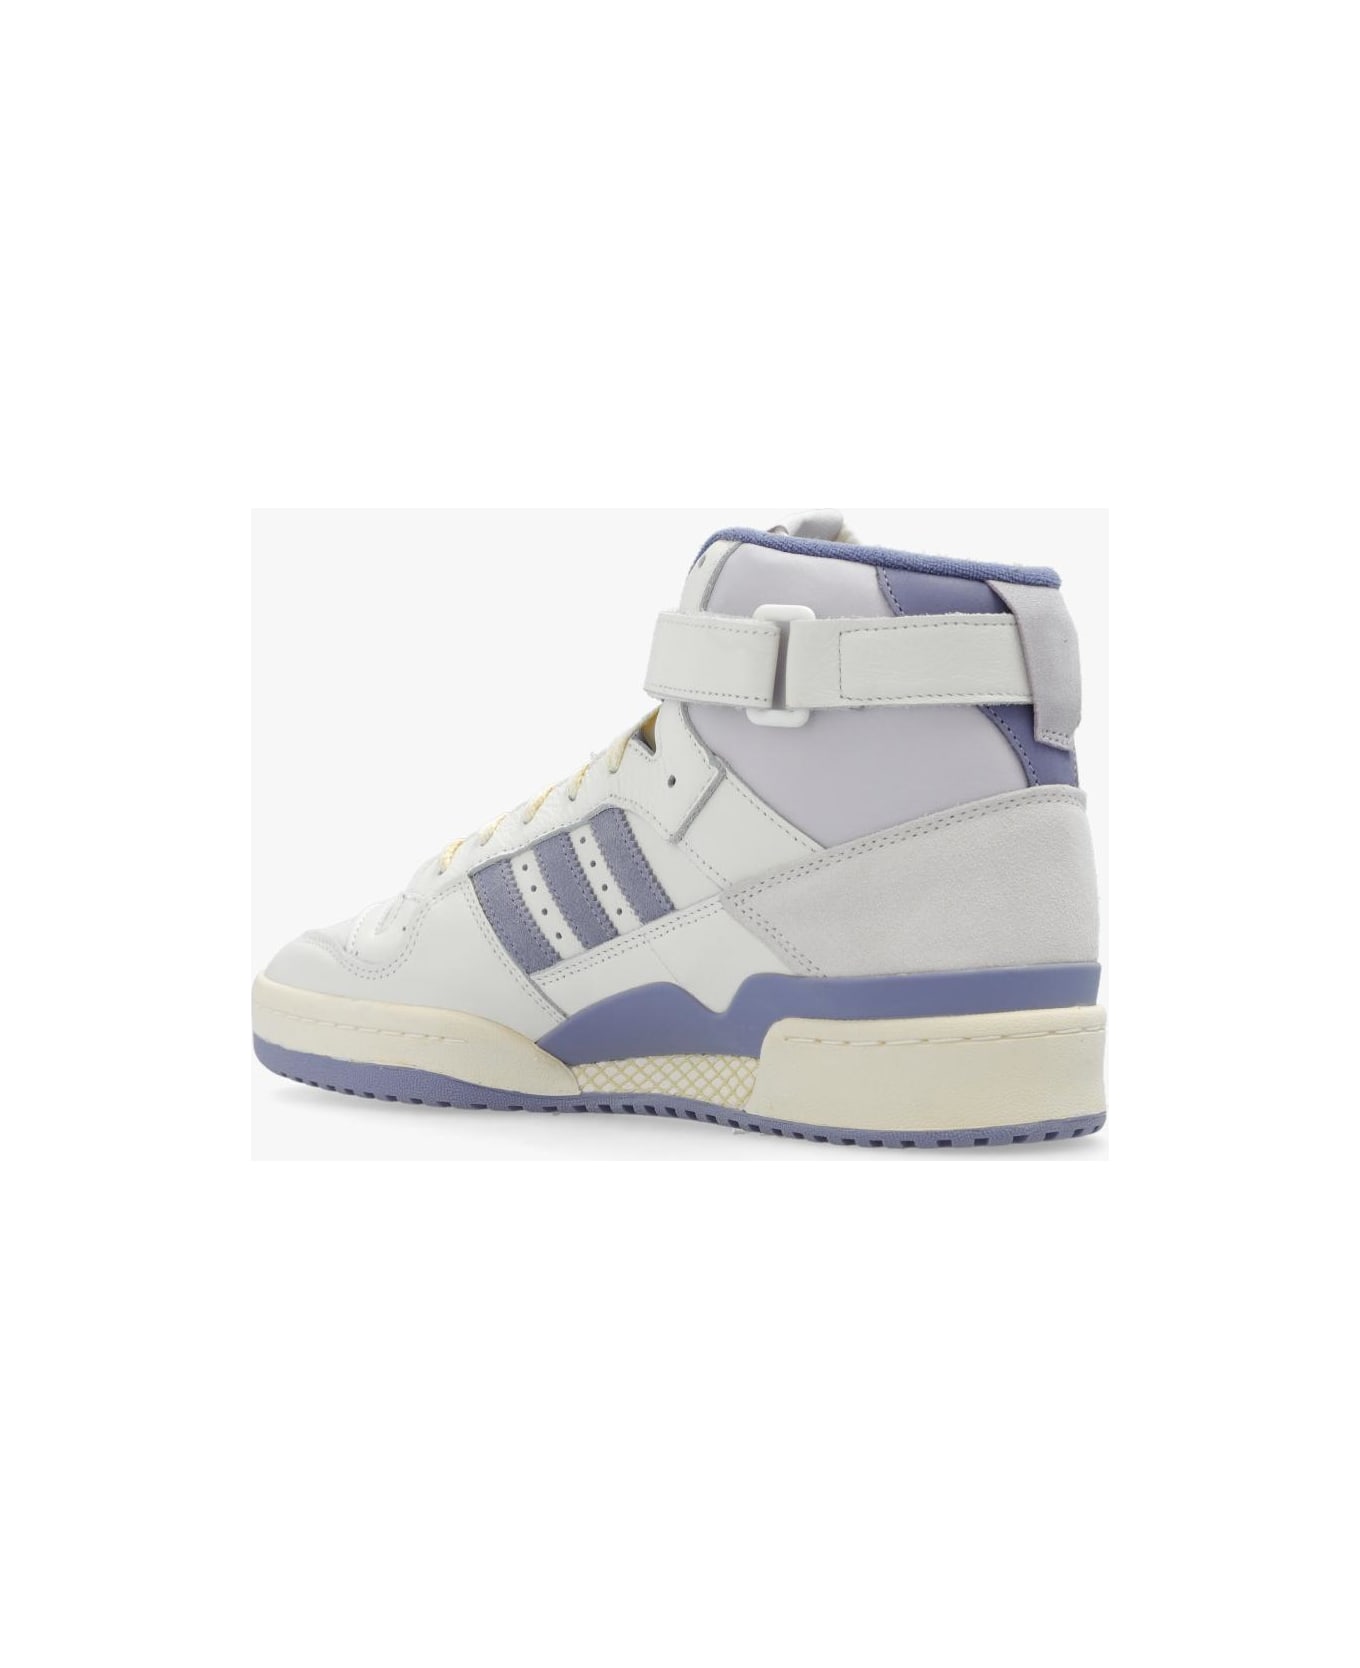 Adidas Originals 'forum 84 Hi' Sneakers - White